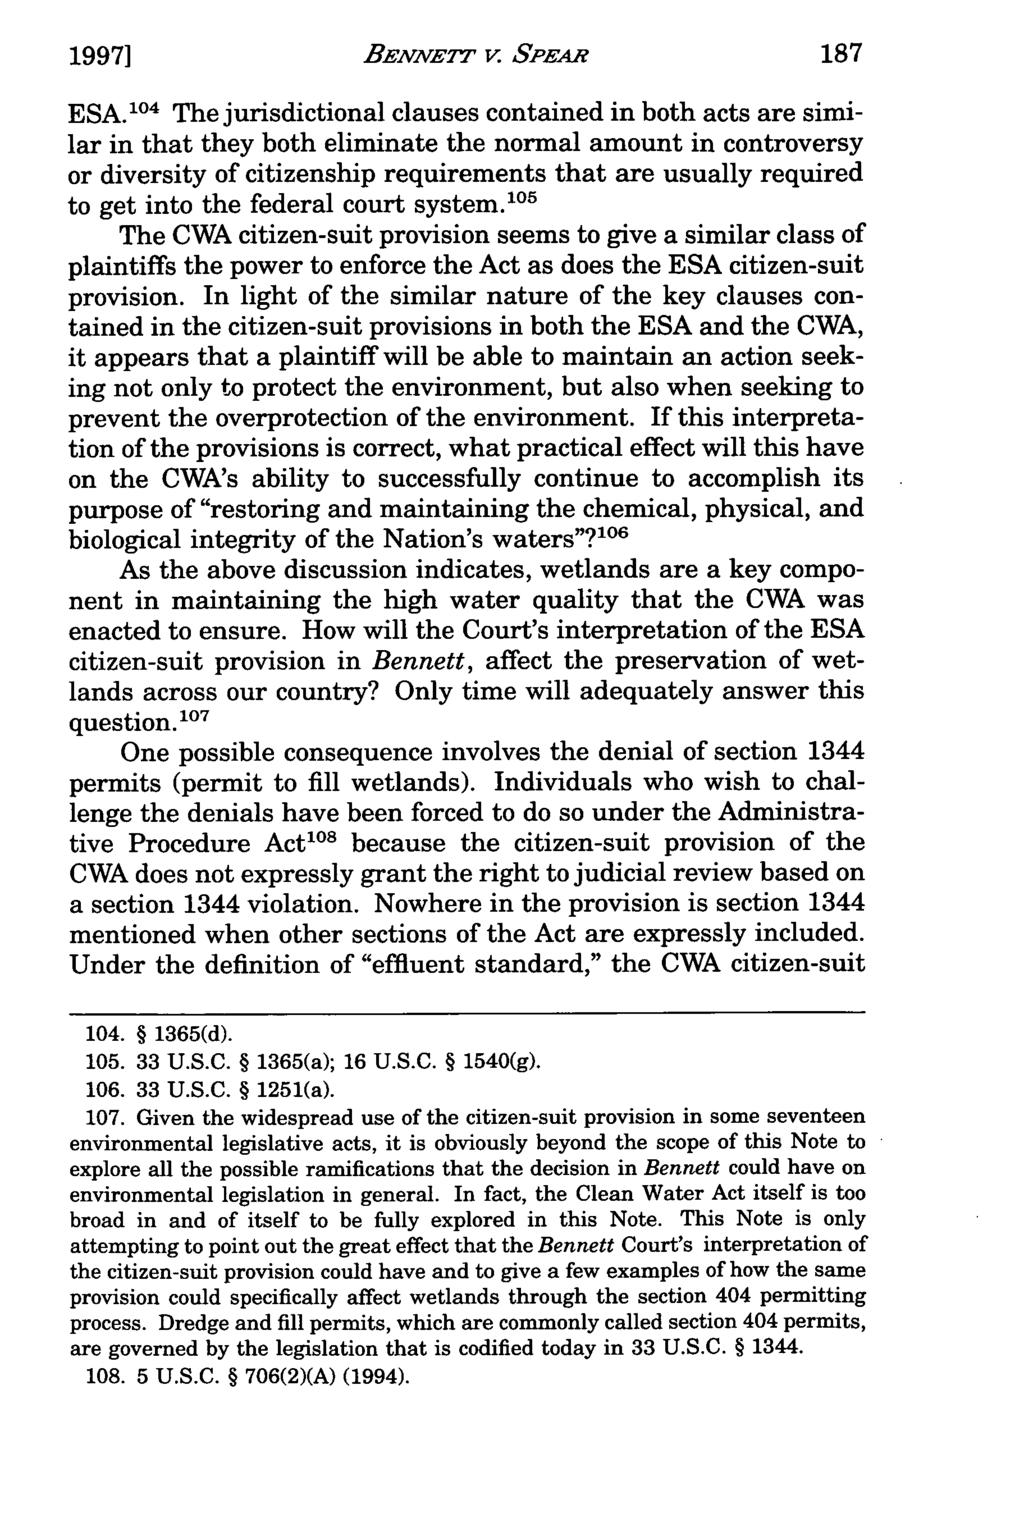 19971 Evans: Bennett v. BENNErT Spear: A New Interpretation v. SPEARof the Citizen-Suit Provis ESA.